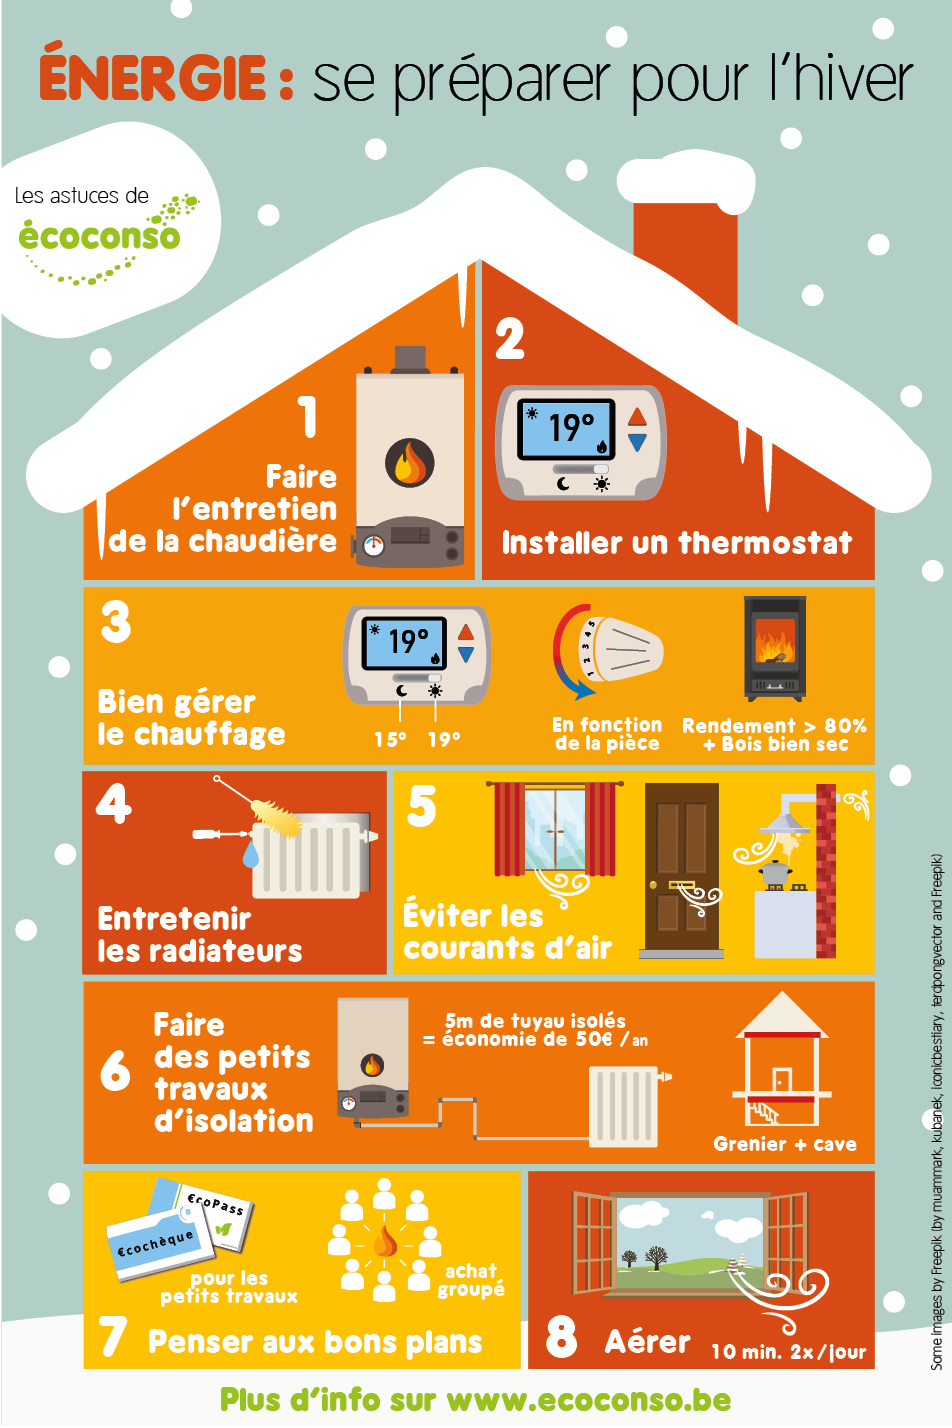 🔥TEST Quel est le radiateur le plus économique en électricité ? le  chauffage qui consomme le moins ? 